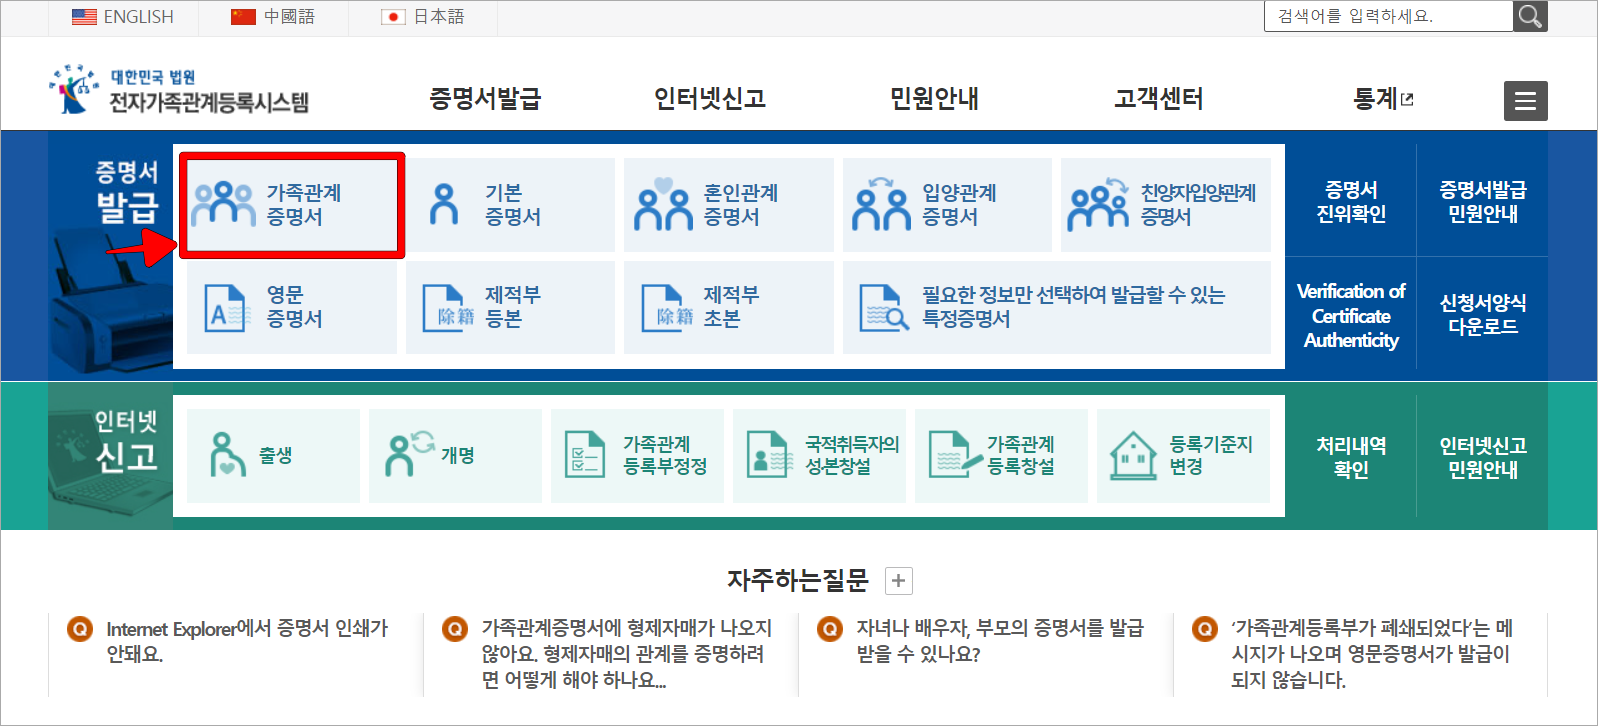 대한민국 법원 전자가족관계등록시스템의 증명서 발급 메뉴 중 가족관계증명서를 선택